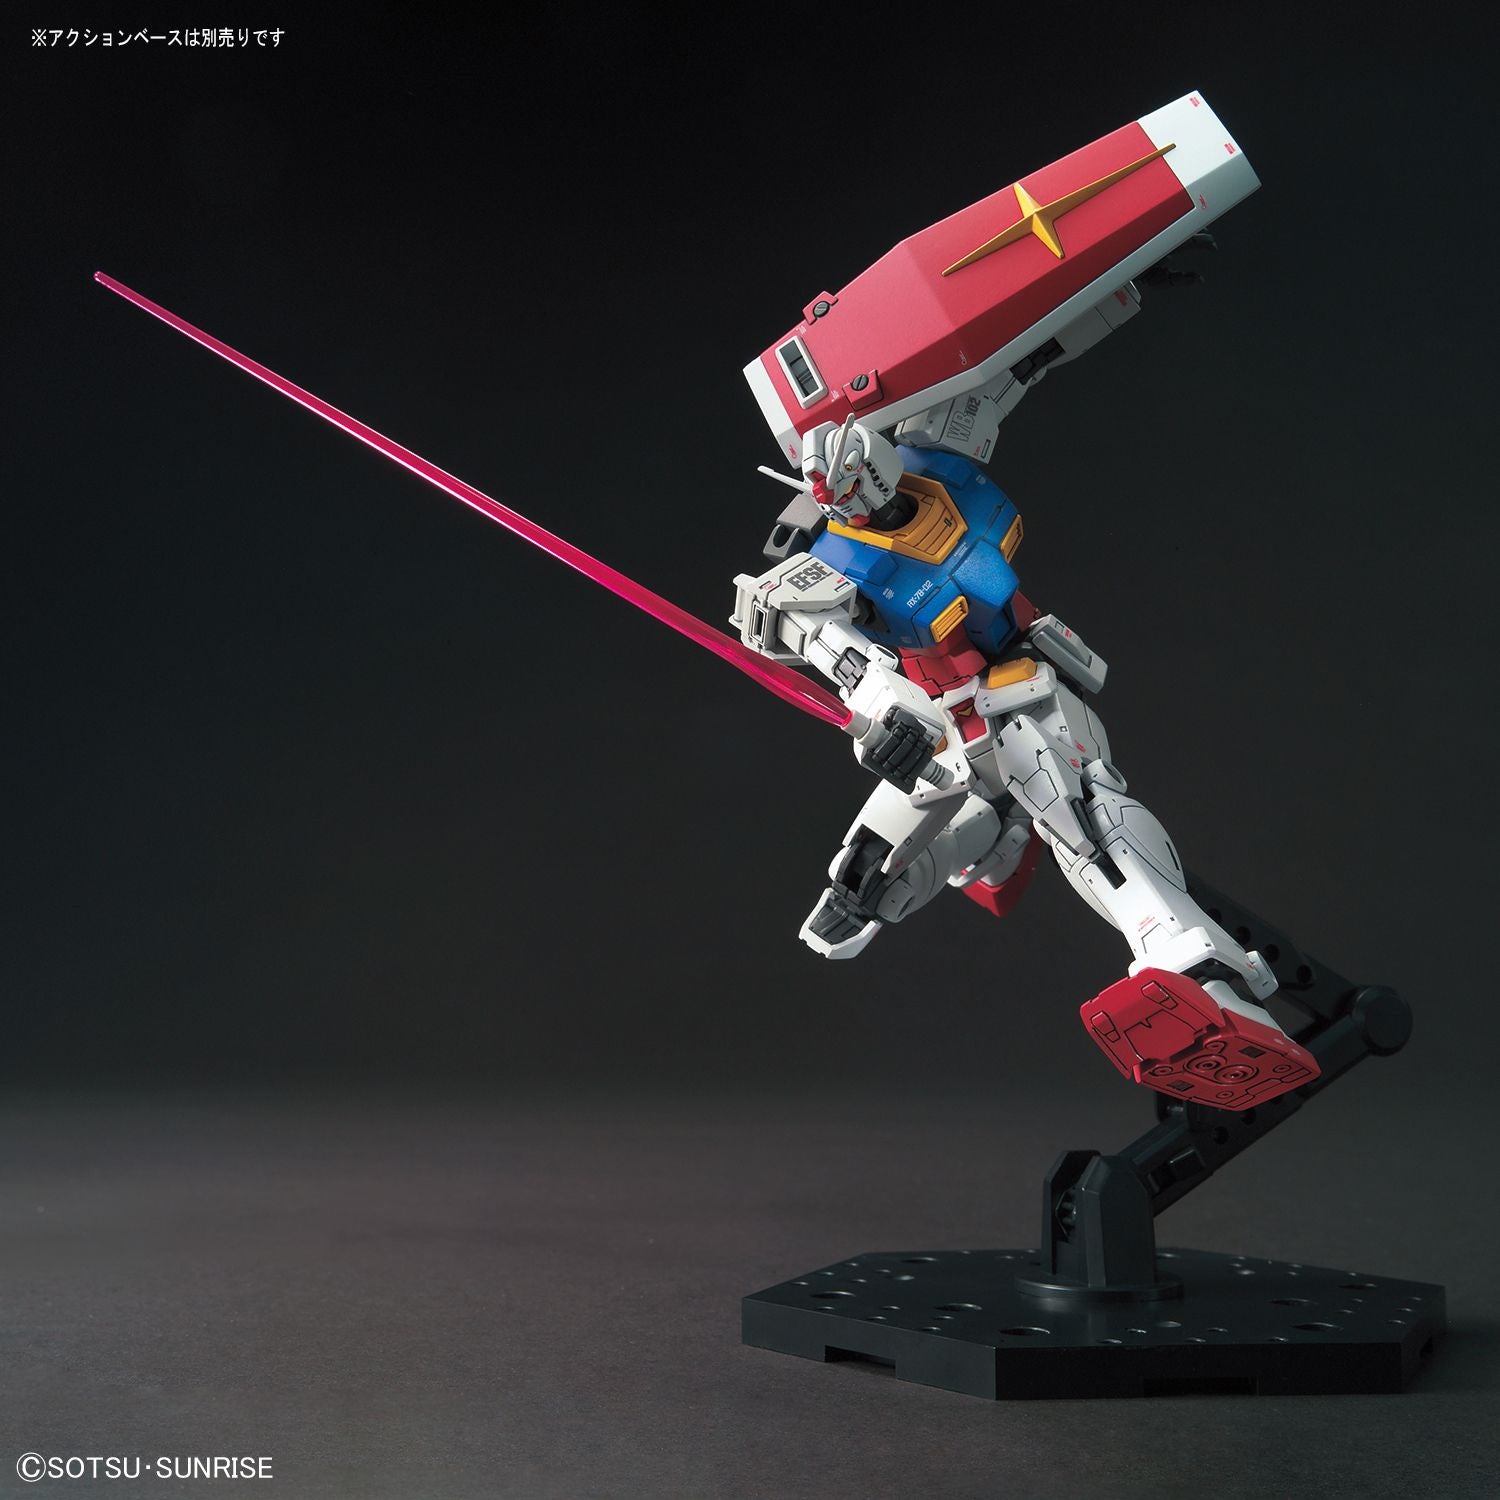 HG 1/144 RX-78-02 Gundam (Gundam The Origin Ver.) - High Grade Mobile Suit Gundam: The Origin | Glacier Hobbies